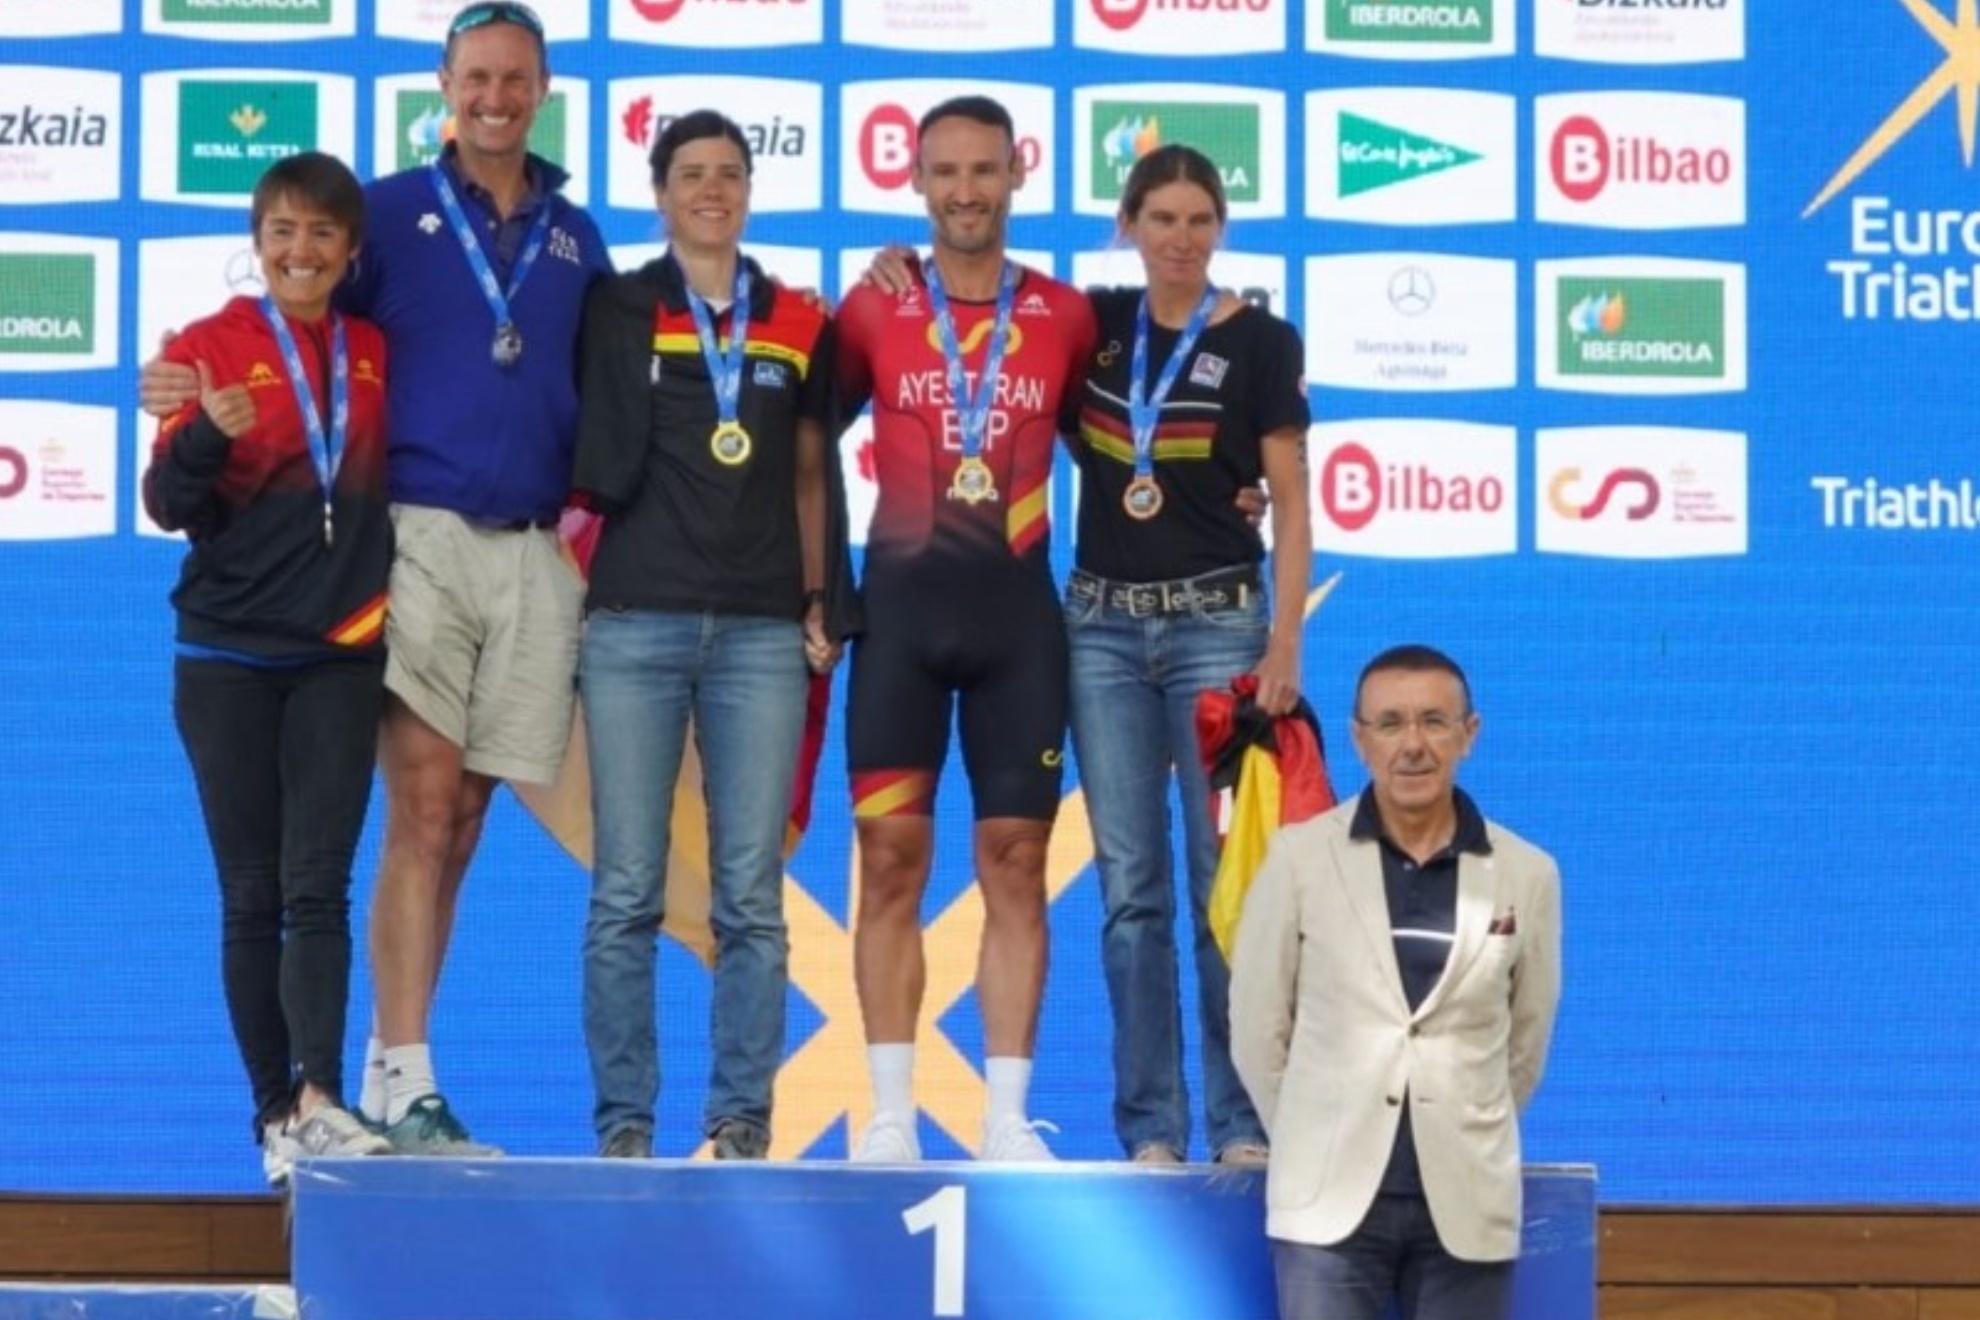 José Hidalgo, abajo a la derecha, junto a uno de los podios del Campeonato de Europa de Triatlón Multideporte Bilbao Bizkaia. Foto: FETRI / JCD Fotografía